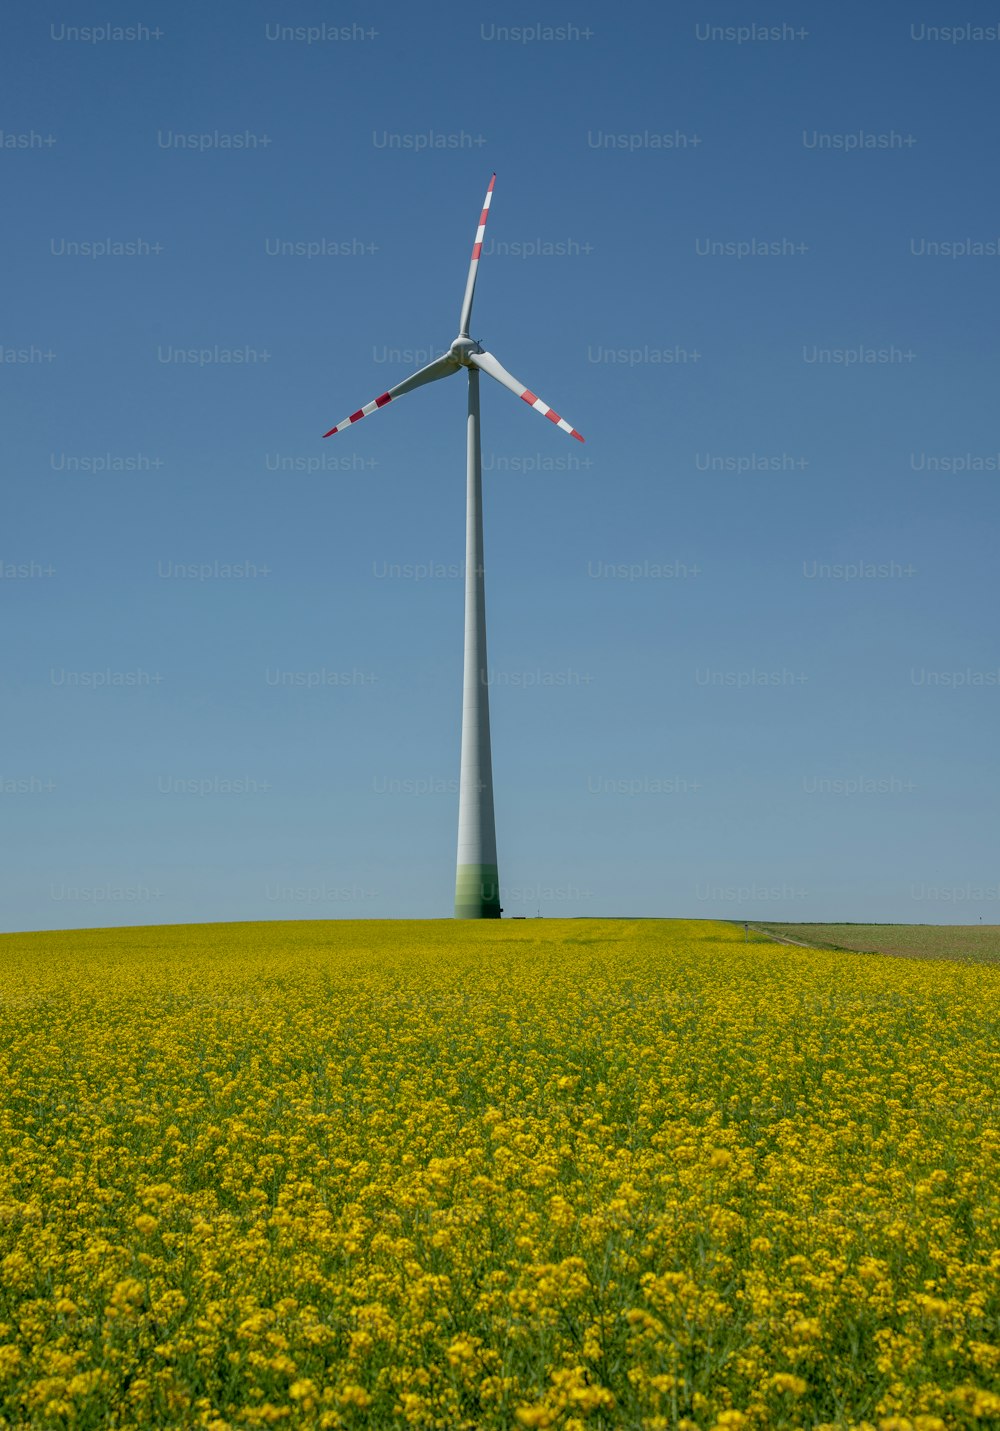 a wind turbine in a field of yellow flowers